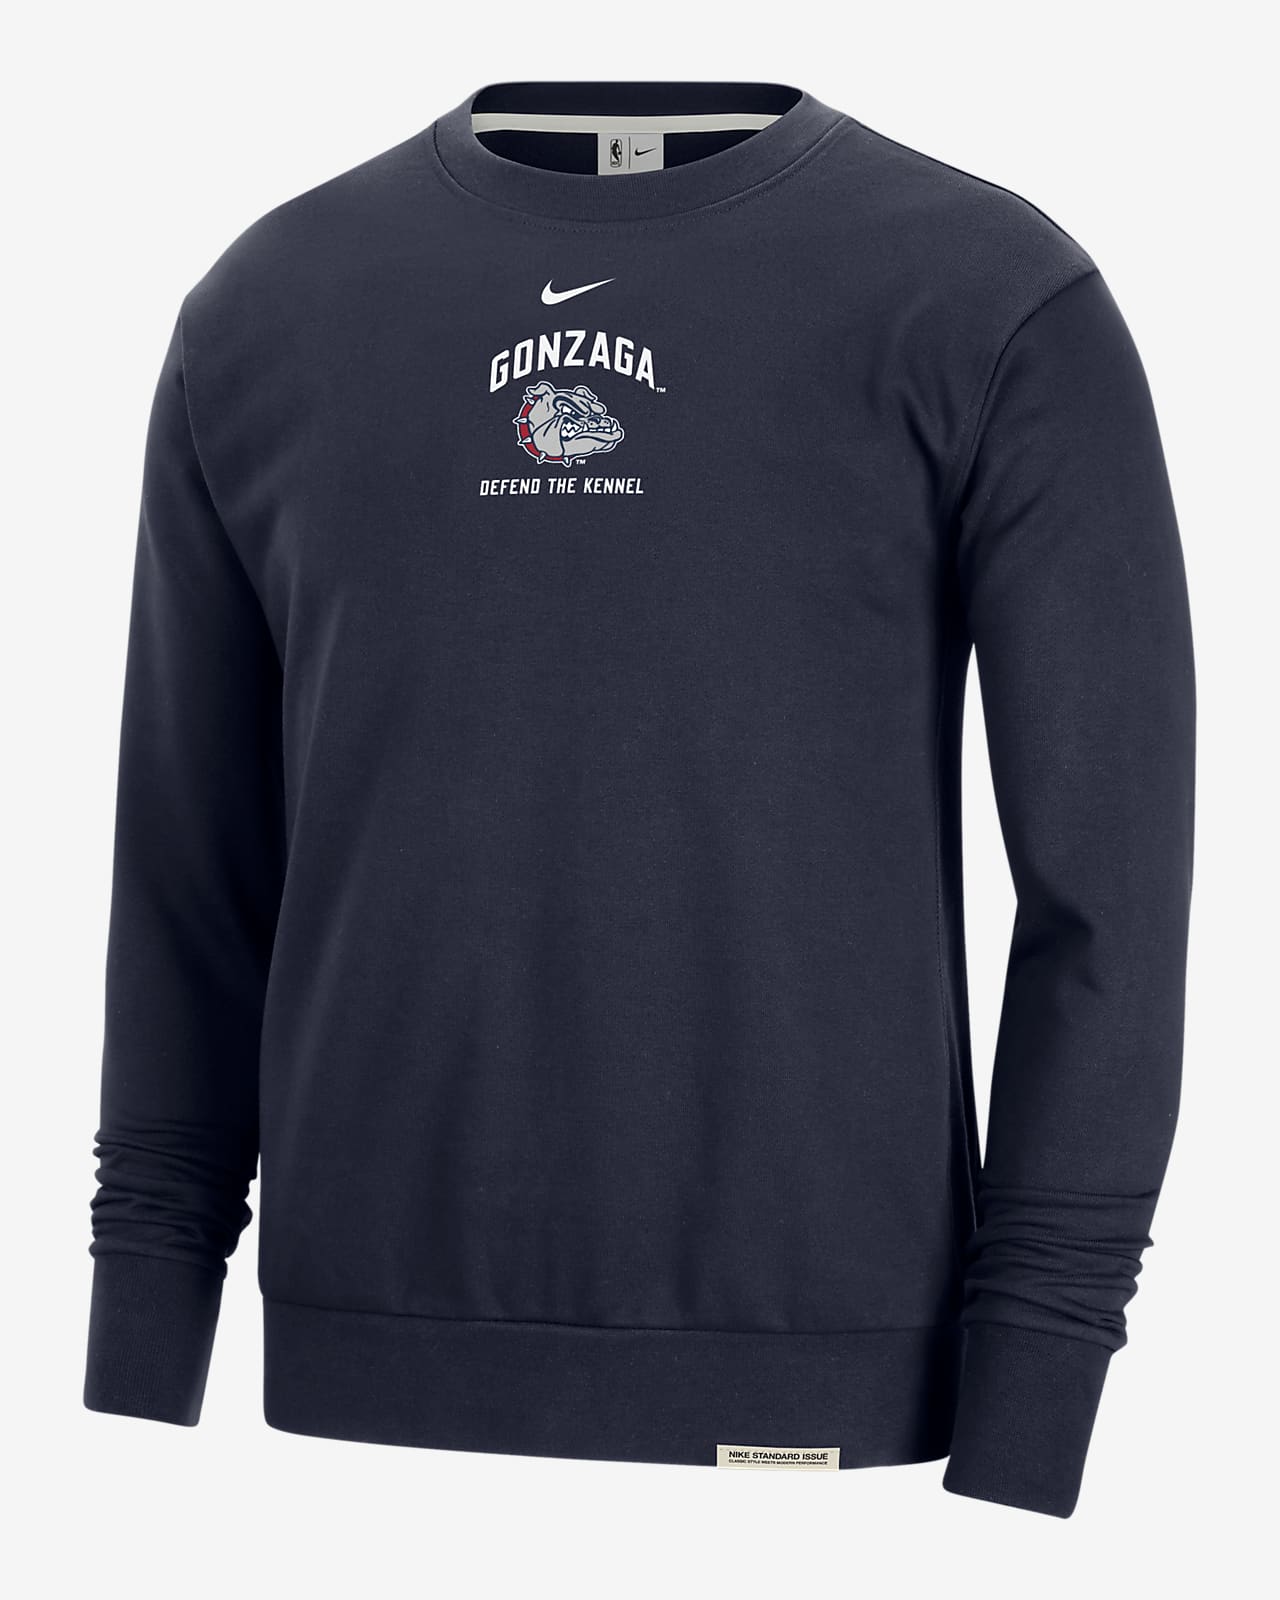 Gonzaga Standard Issue Men's Nike College Fleece Crew-Neck Sweatshirt